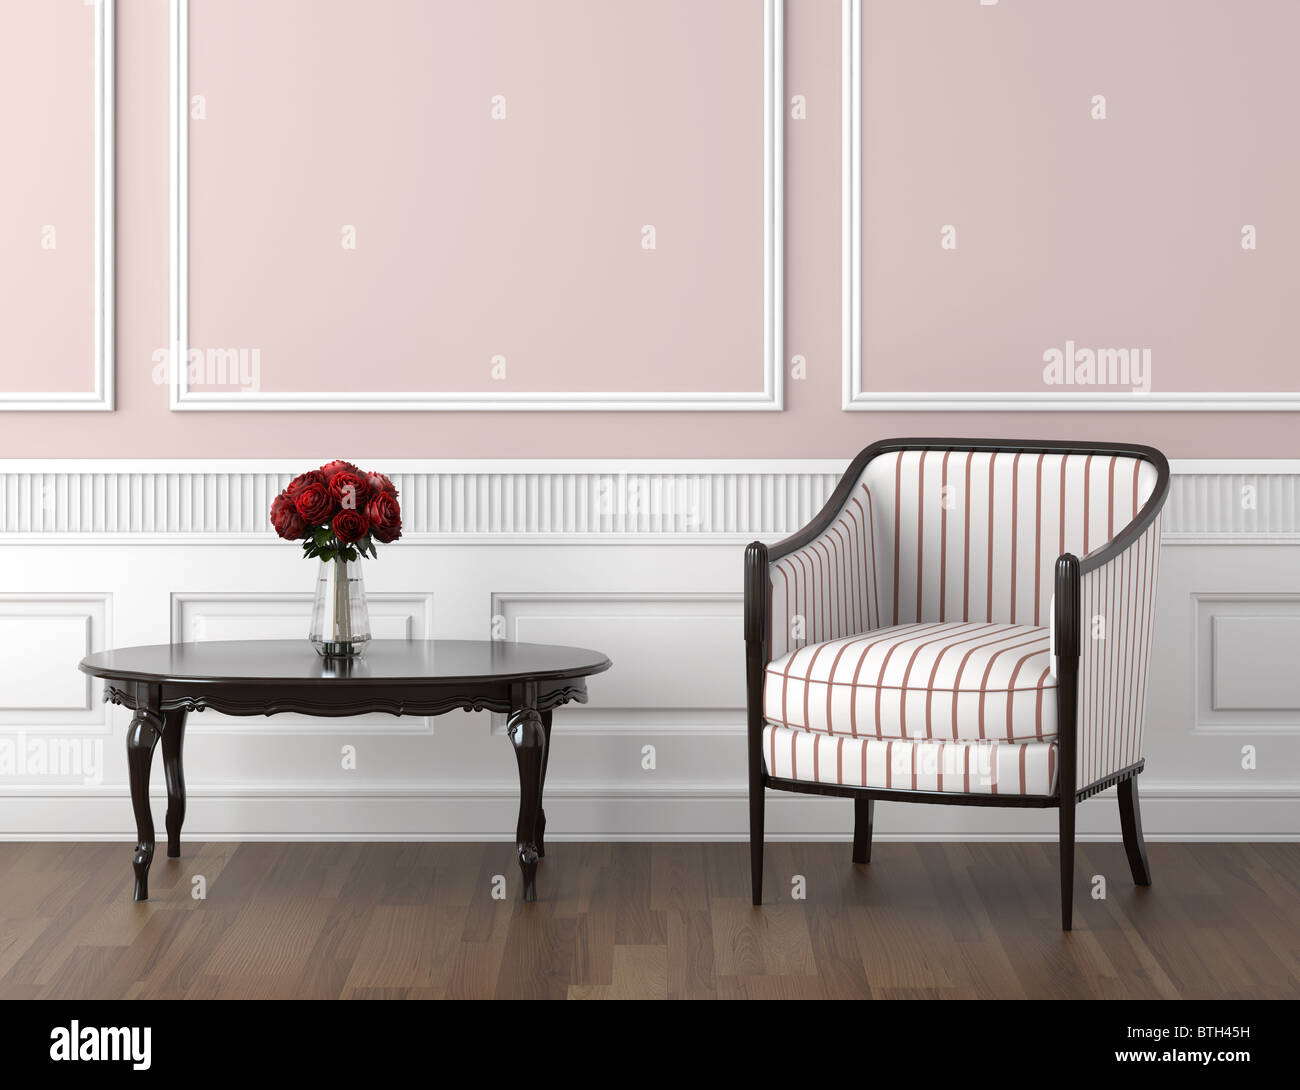 Interior Design der classic Zimmer in blass rosa und weißen Farben Stuhl Tisch mit Rosen, Textfreiraum auf obere Hälfte Stockfoto